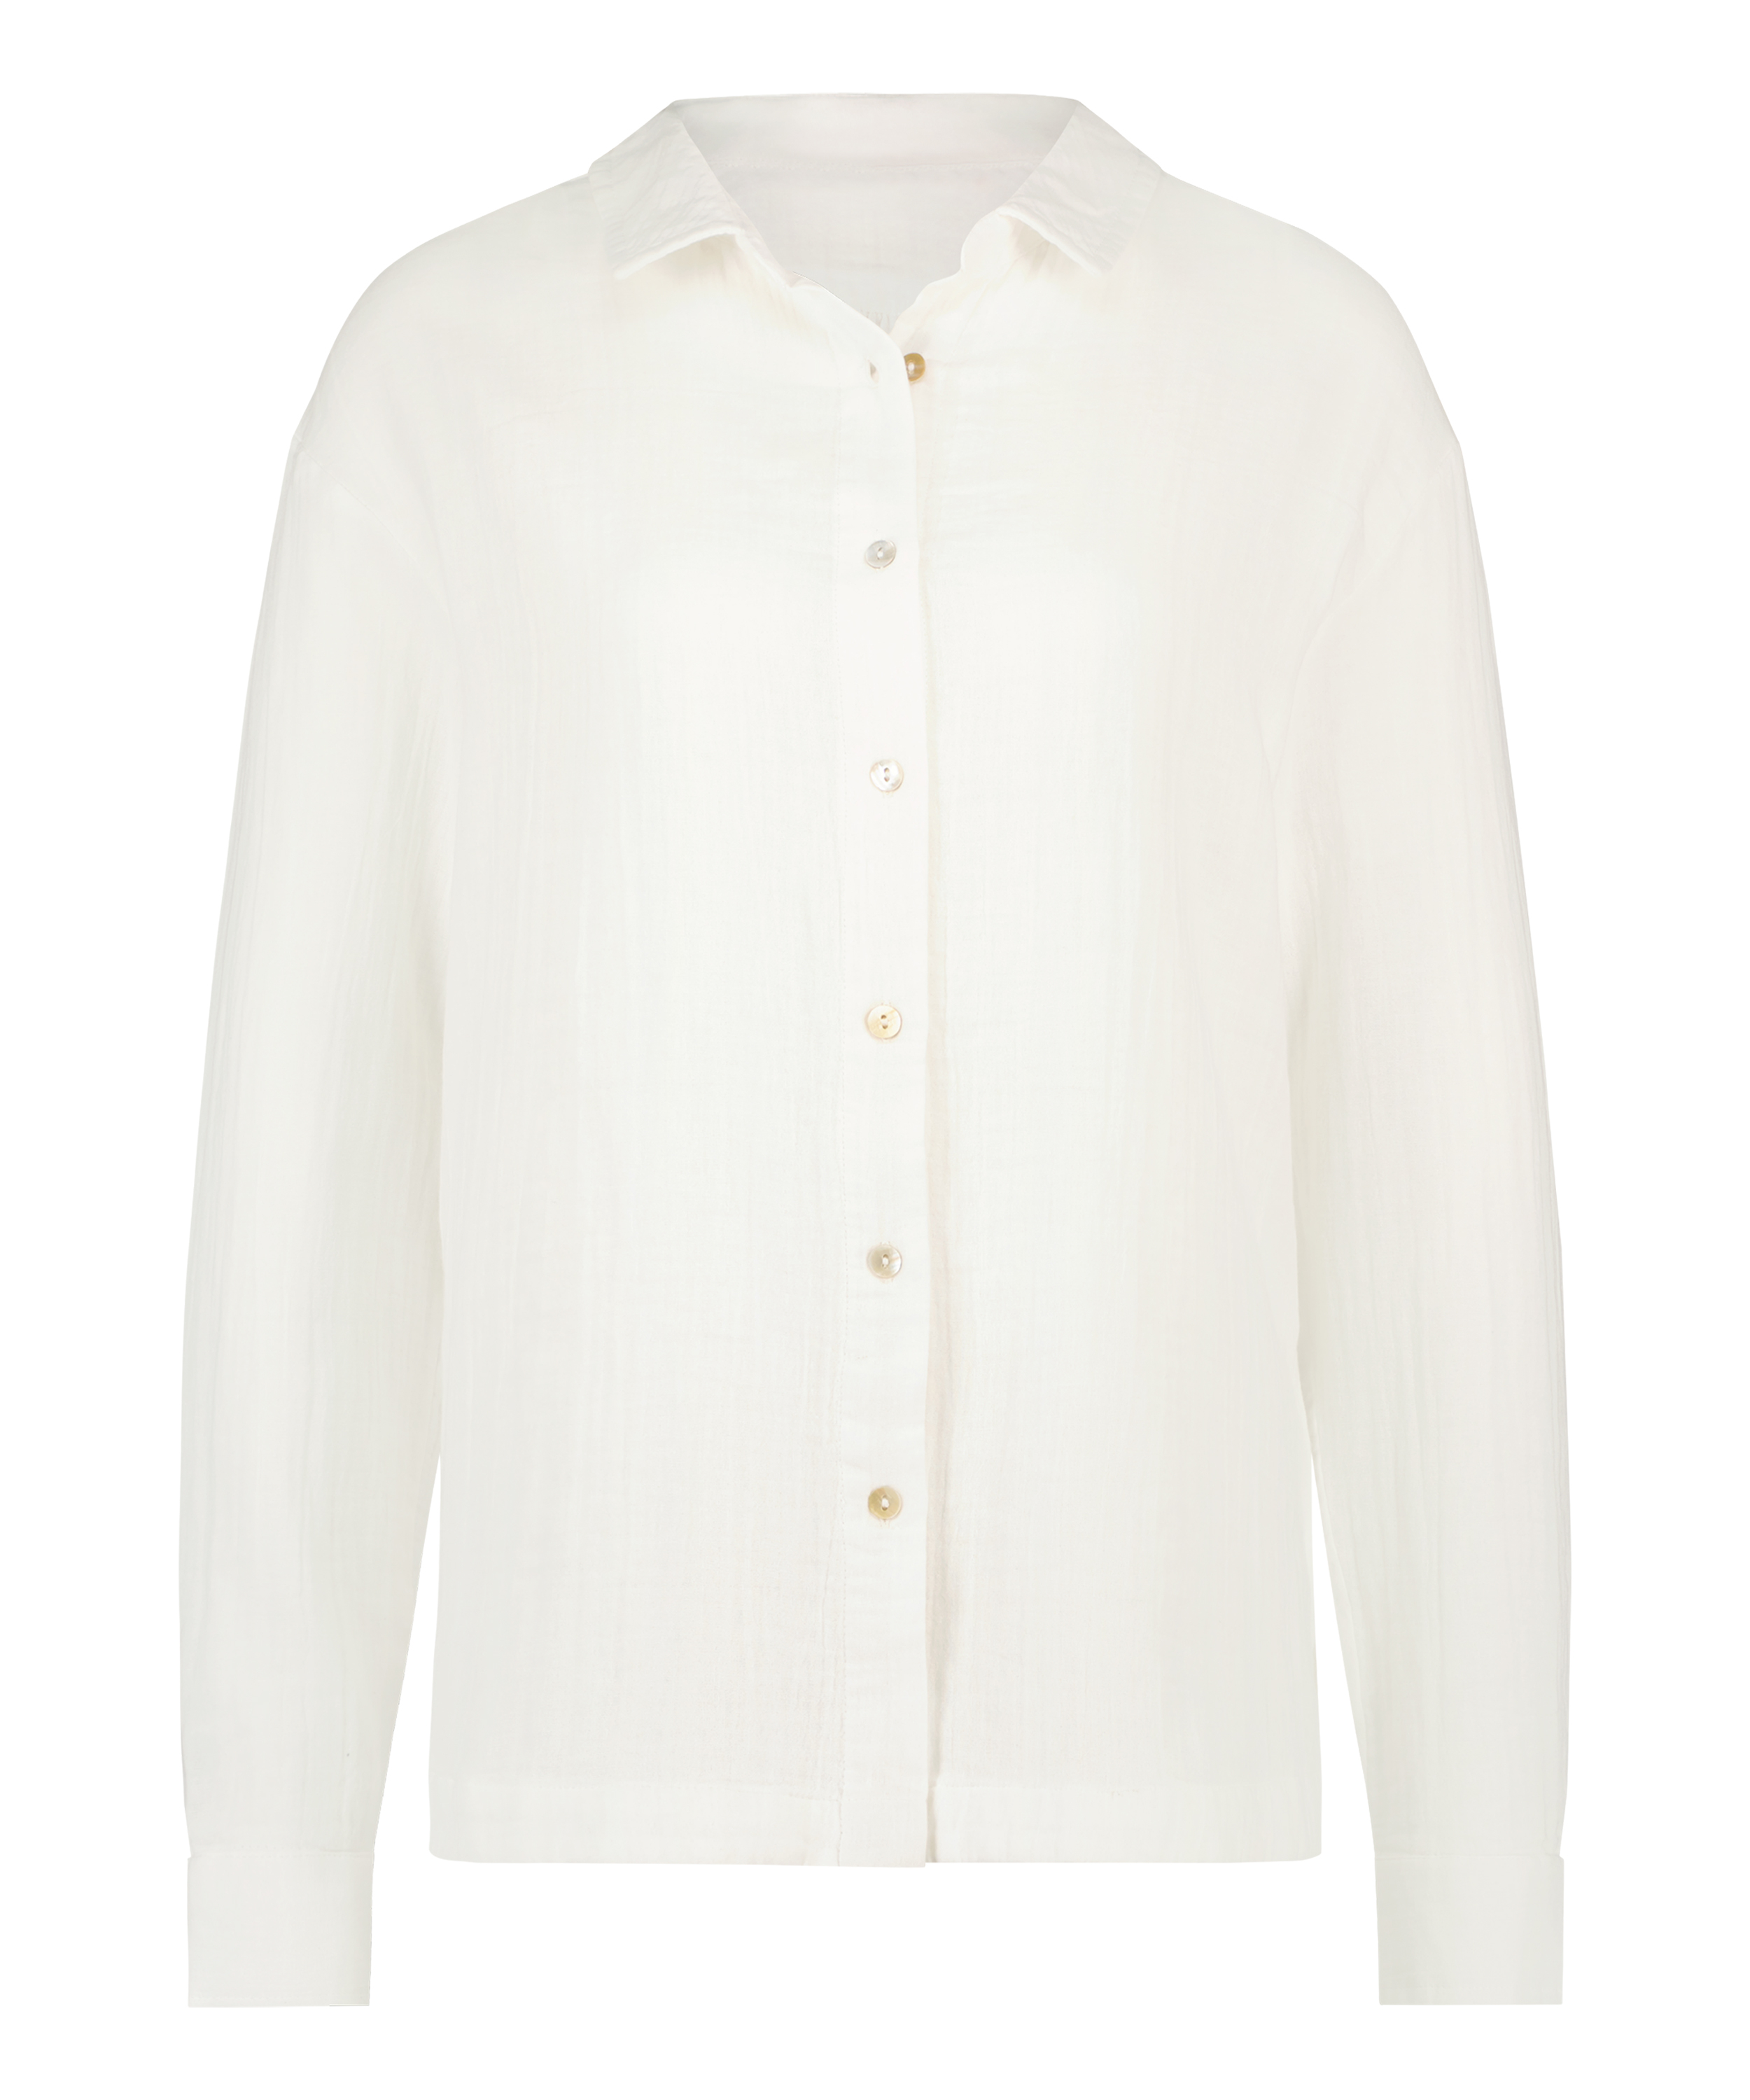 Juna Shirt, White, main